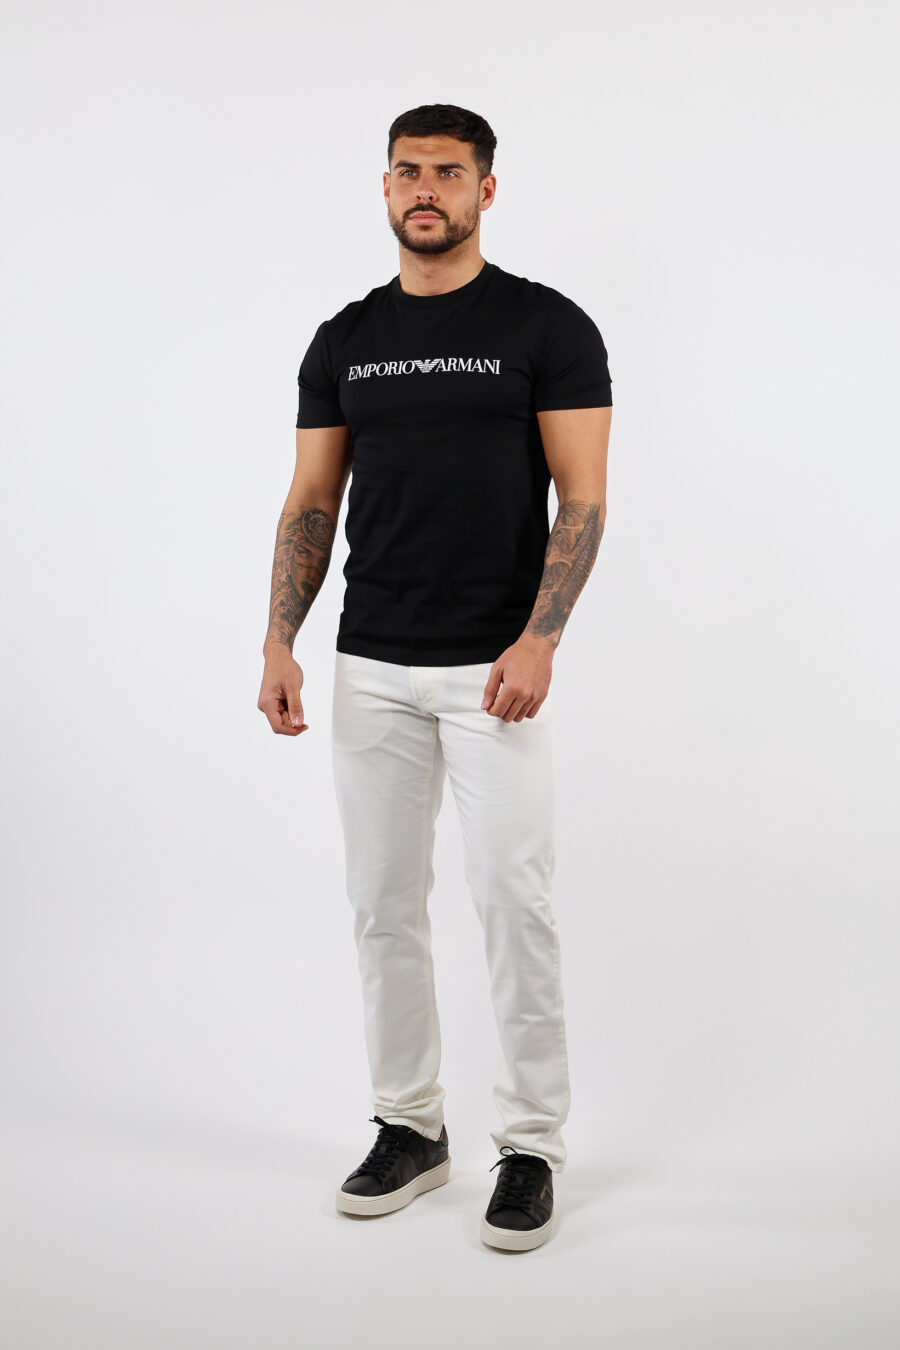 T-shirt preta com letras brancas - BLS Fashion 87